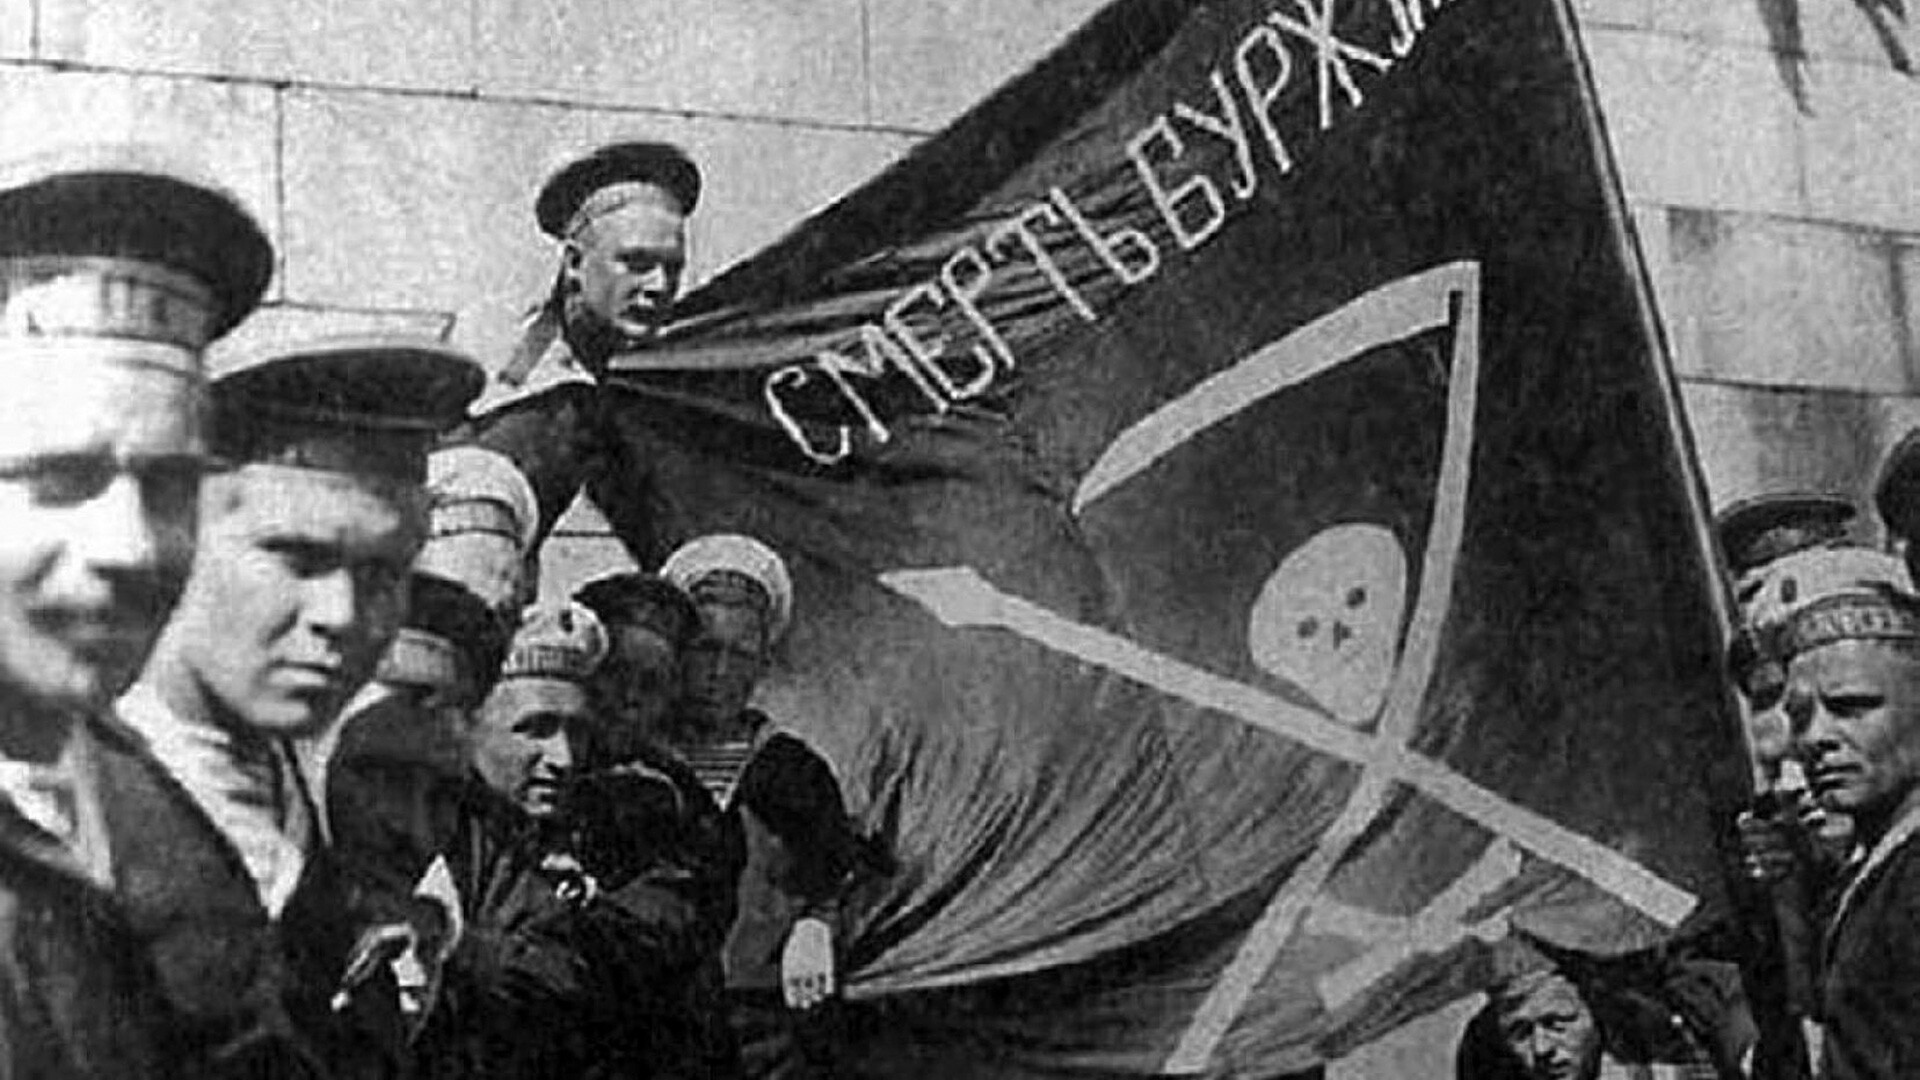 Sailors from the battleship 'Petropavlovsk' in 1917.